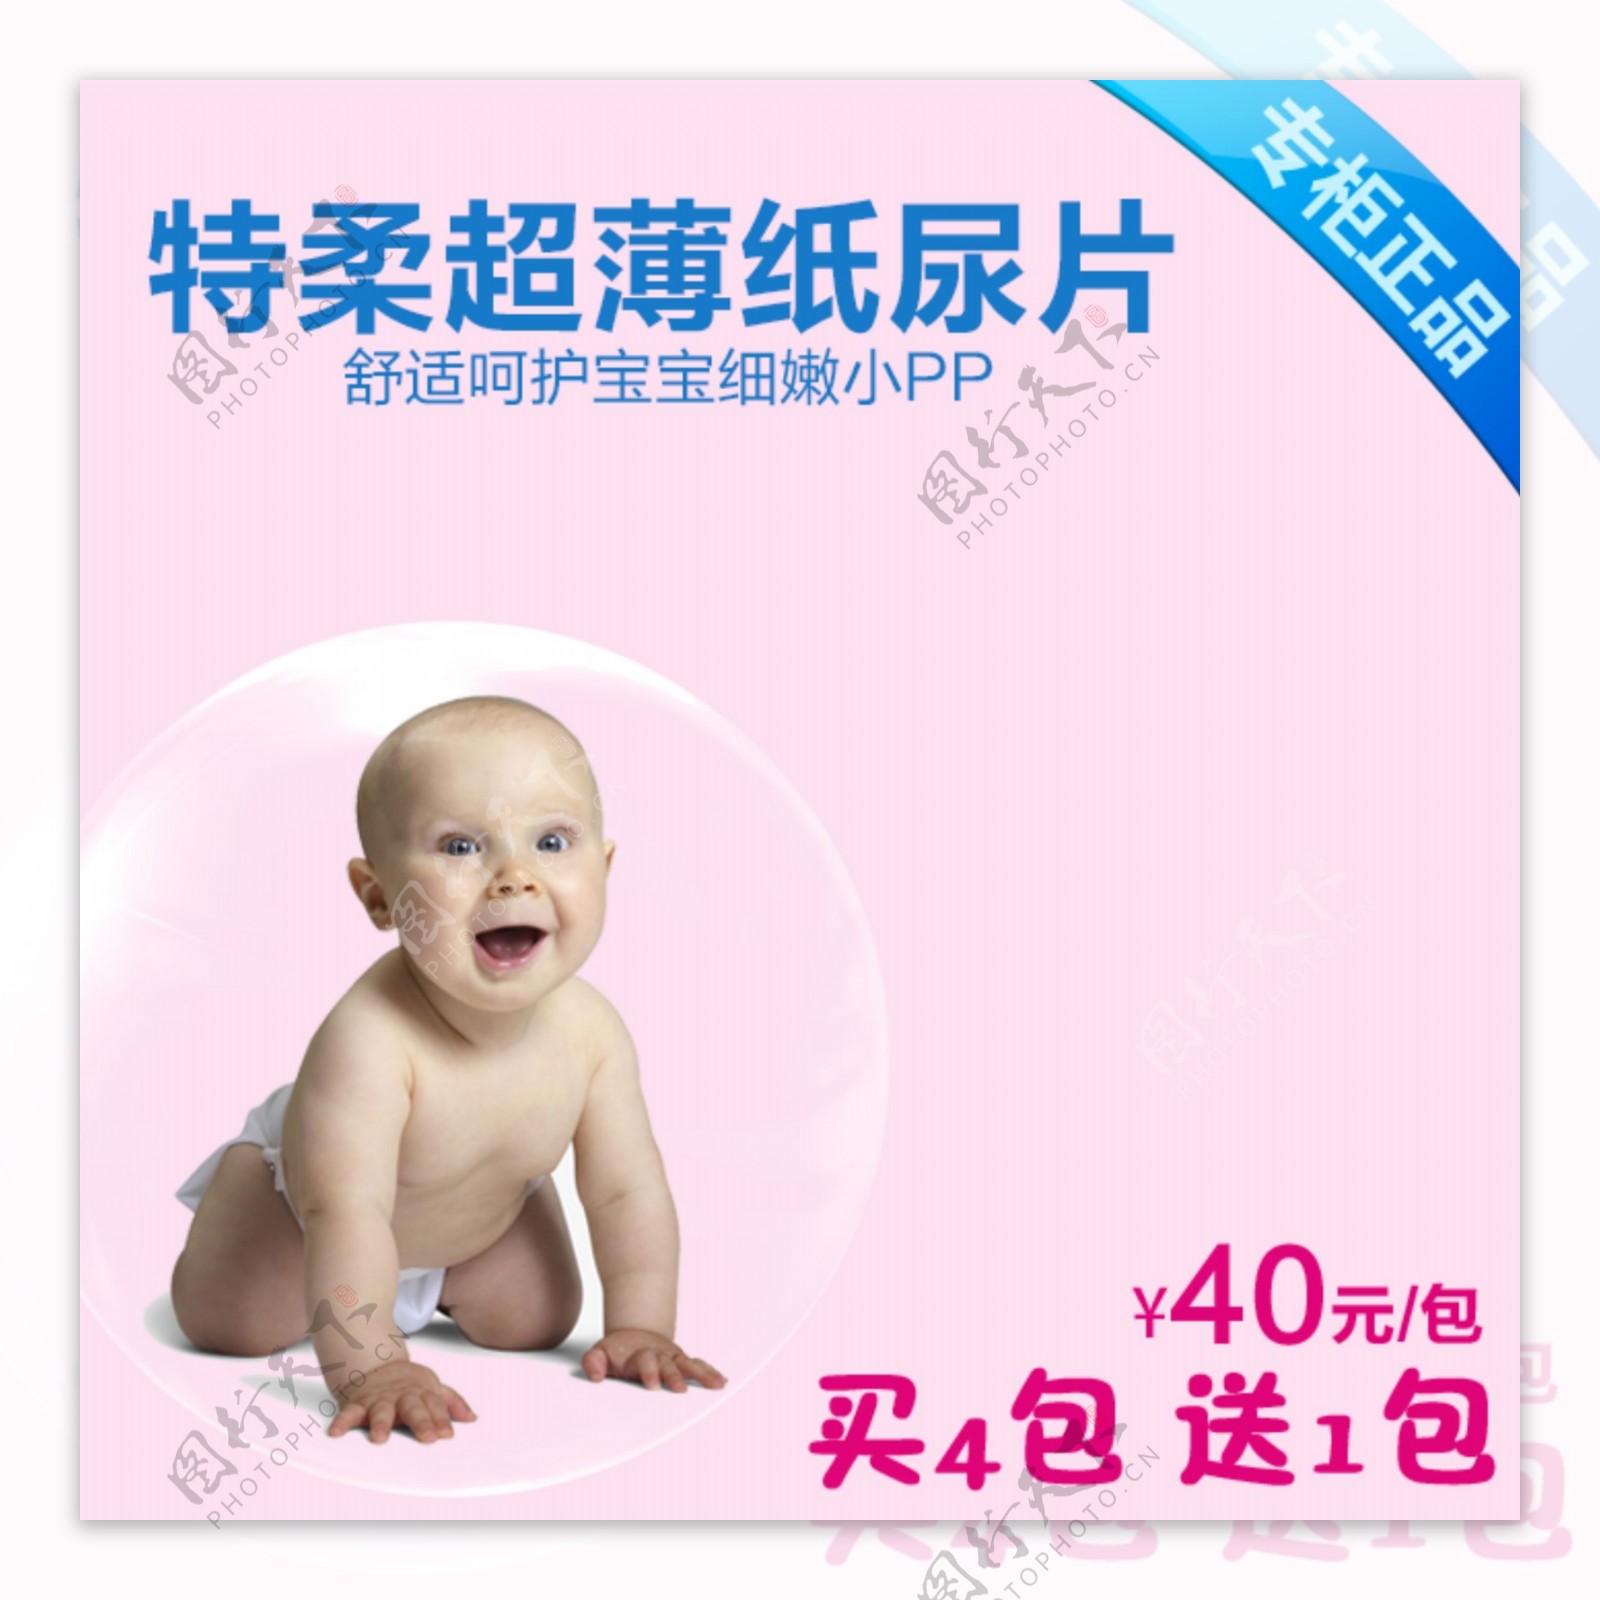 婴儿纸尿裤时尚主图免费下载